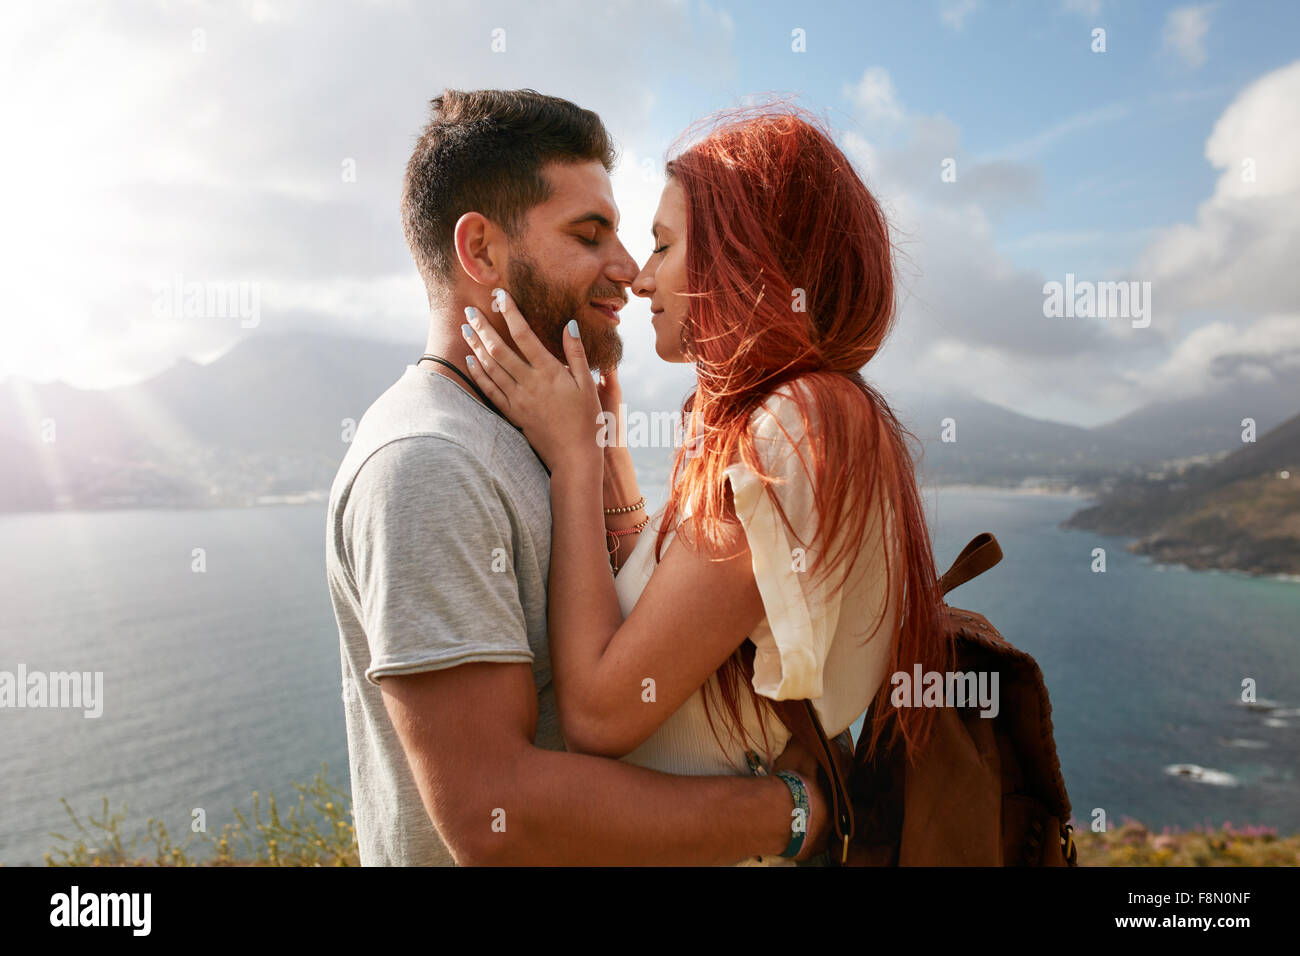 Portrait de jeune homme et femme sur le point de partager un baiser romantique. Young couple enjoying leur amour dans la nature l'extérieur Banque D'Images